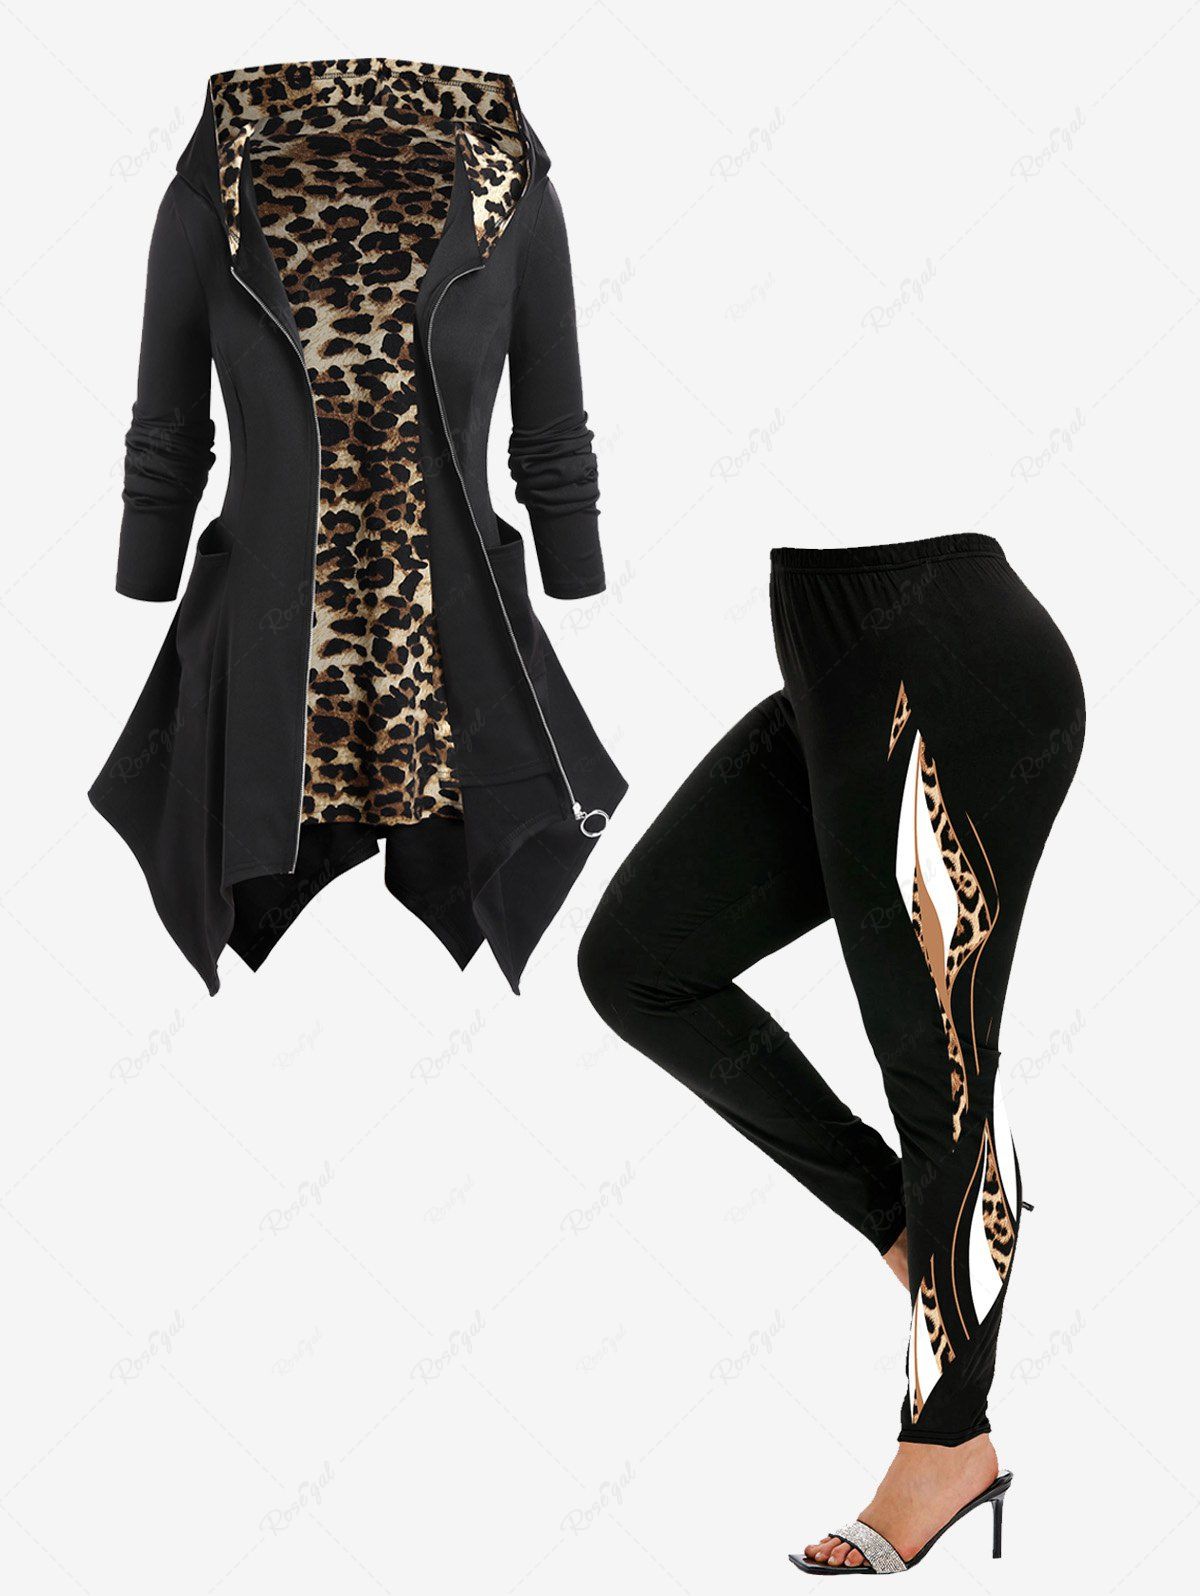 Unique Hooded Leopard Print Handkerchief Coat and Leopard Colorblock Leggings Plus Size Outerwear Outfit  